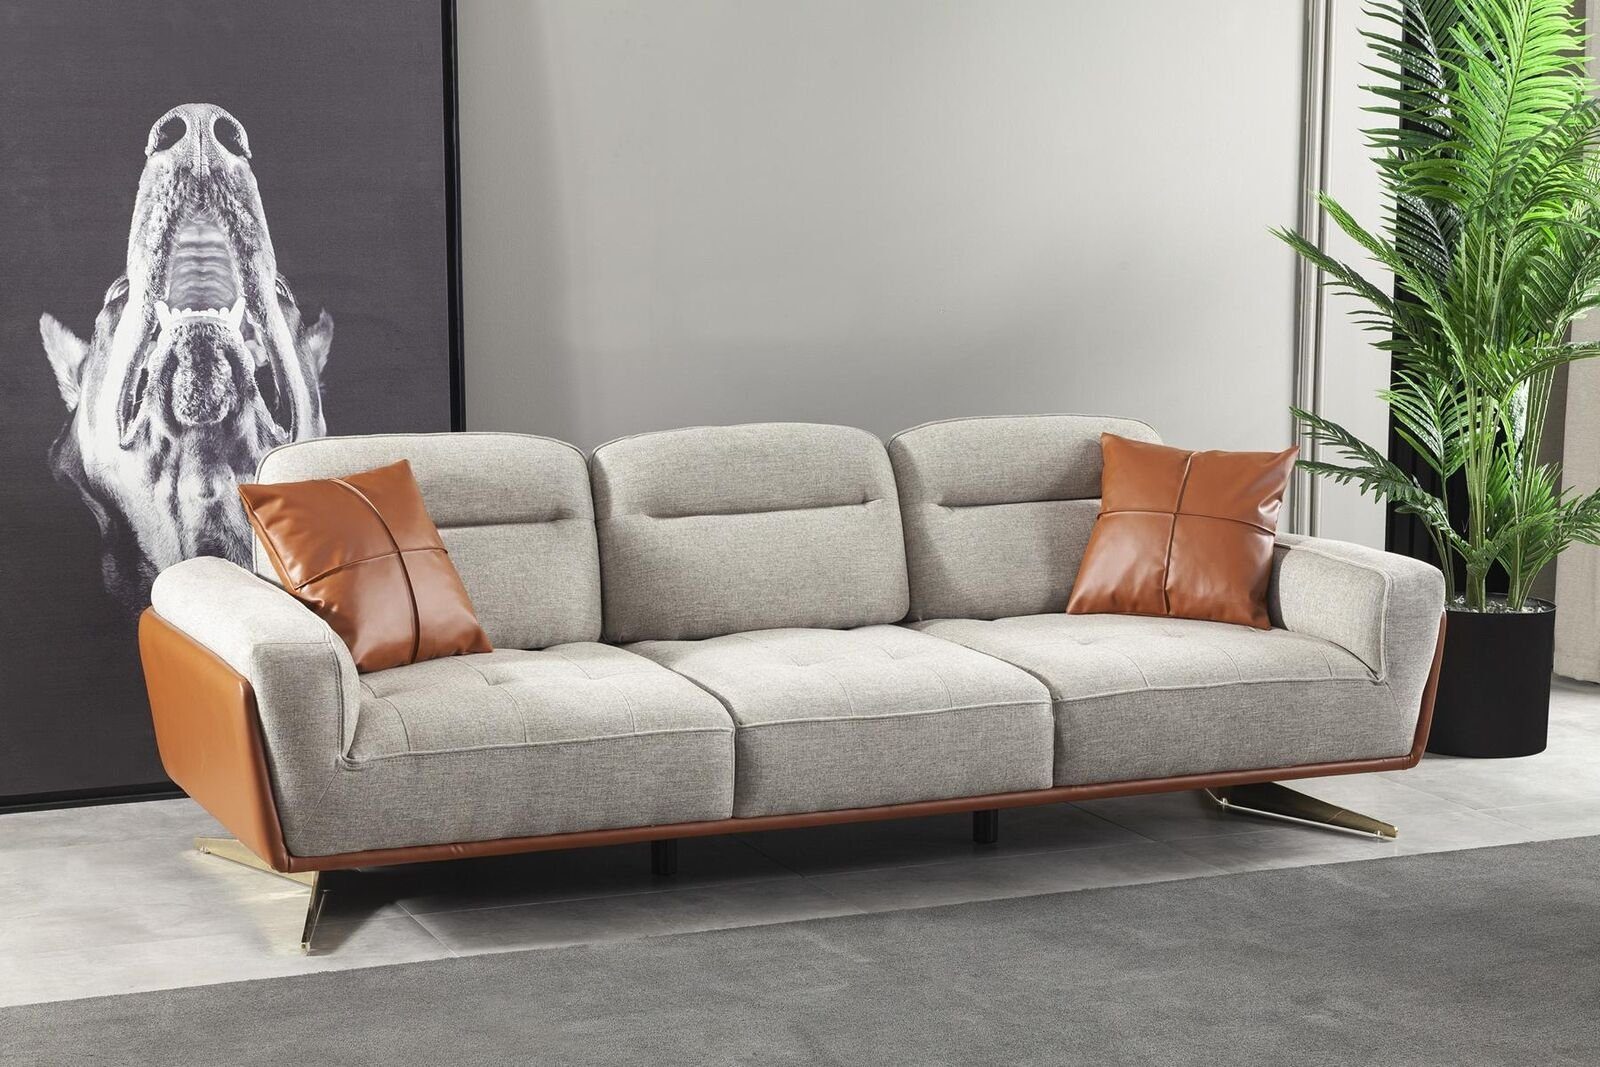 JVmoebel 4-Sitzer Gemütliche Couchen Stoffsofa, Teile, 1 Couch Sofas in Big Sofa Europa Wohnzimmer Made